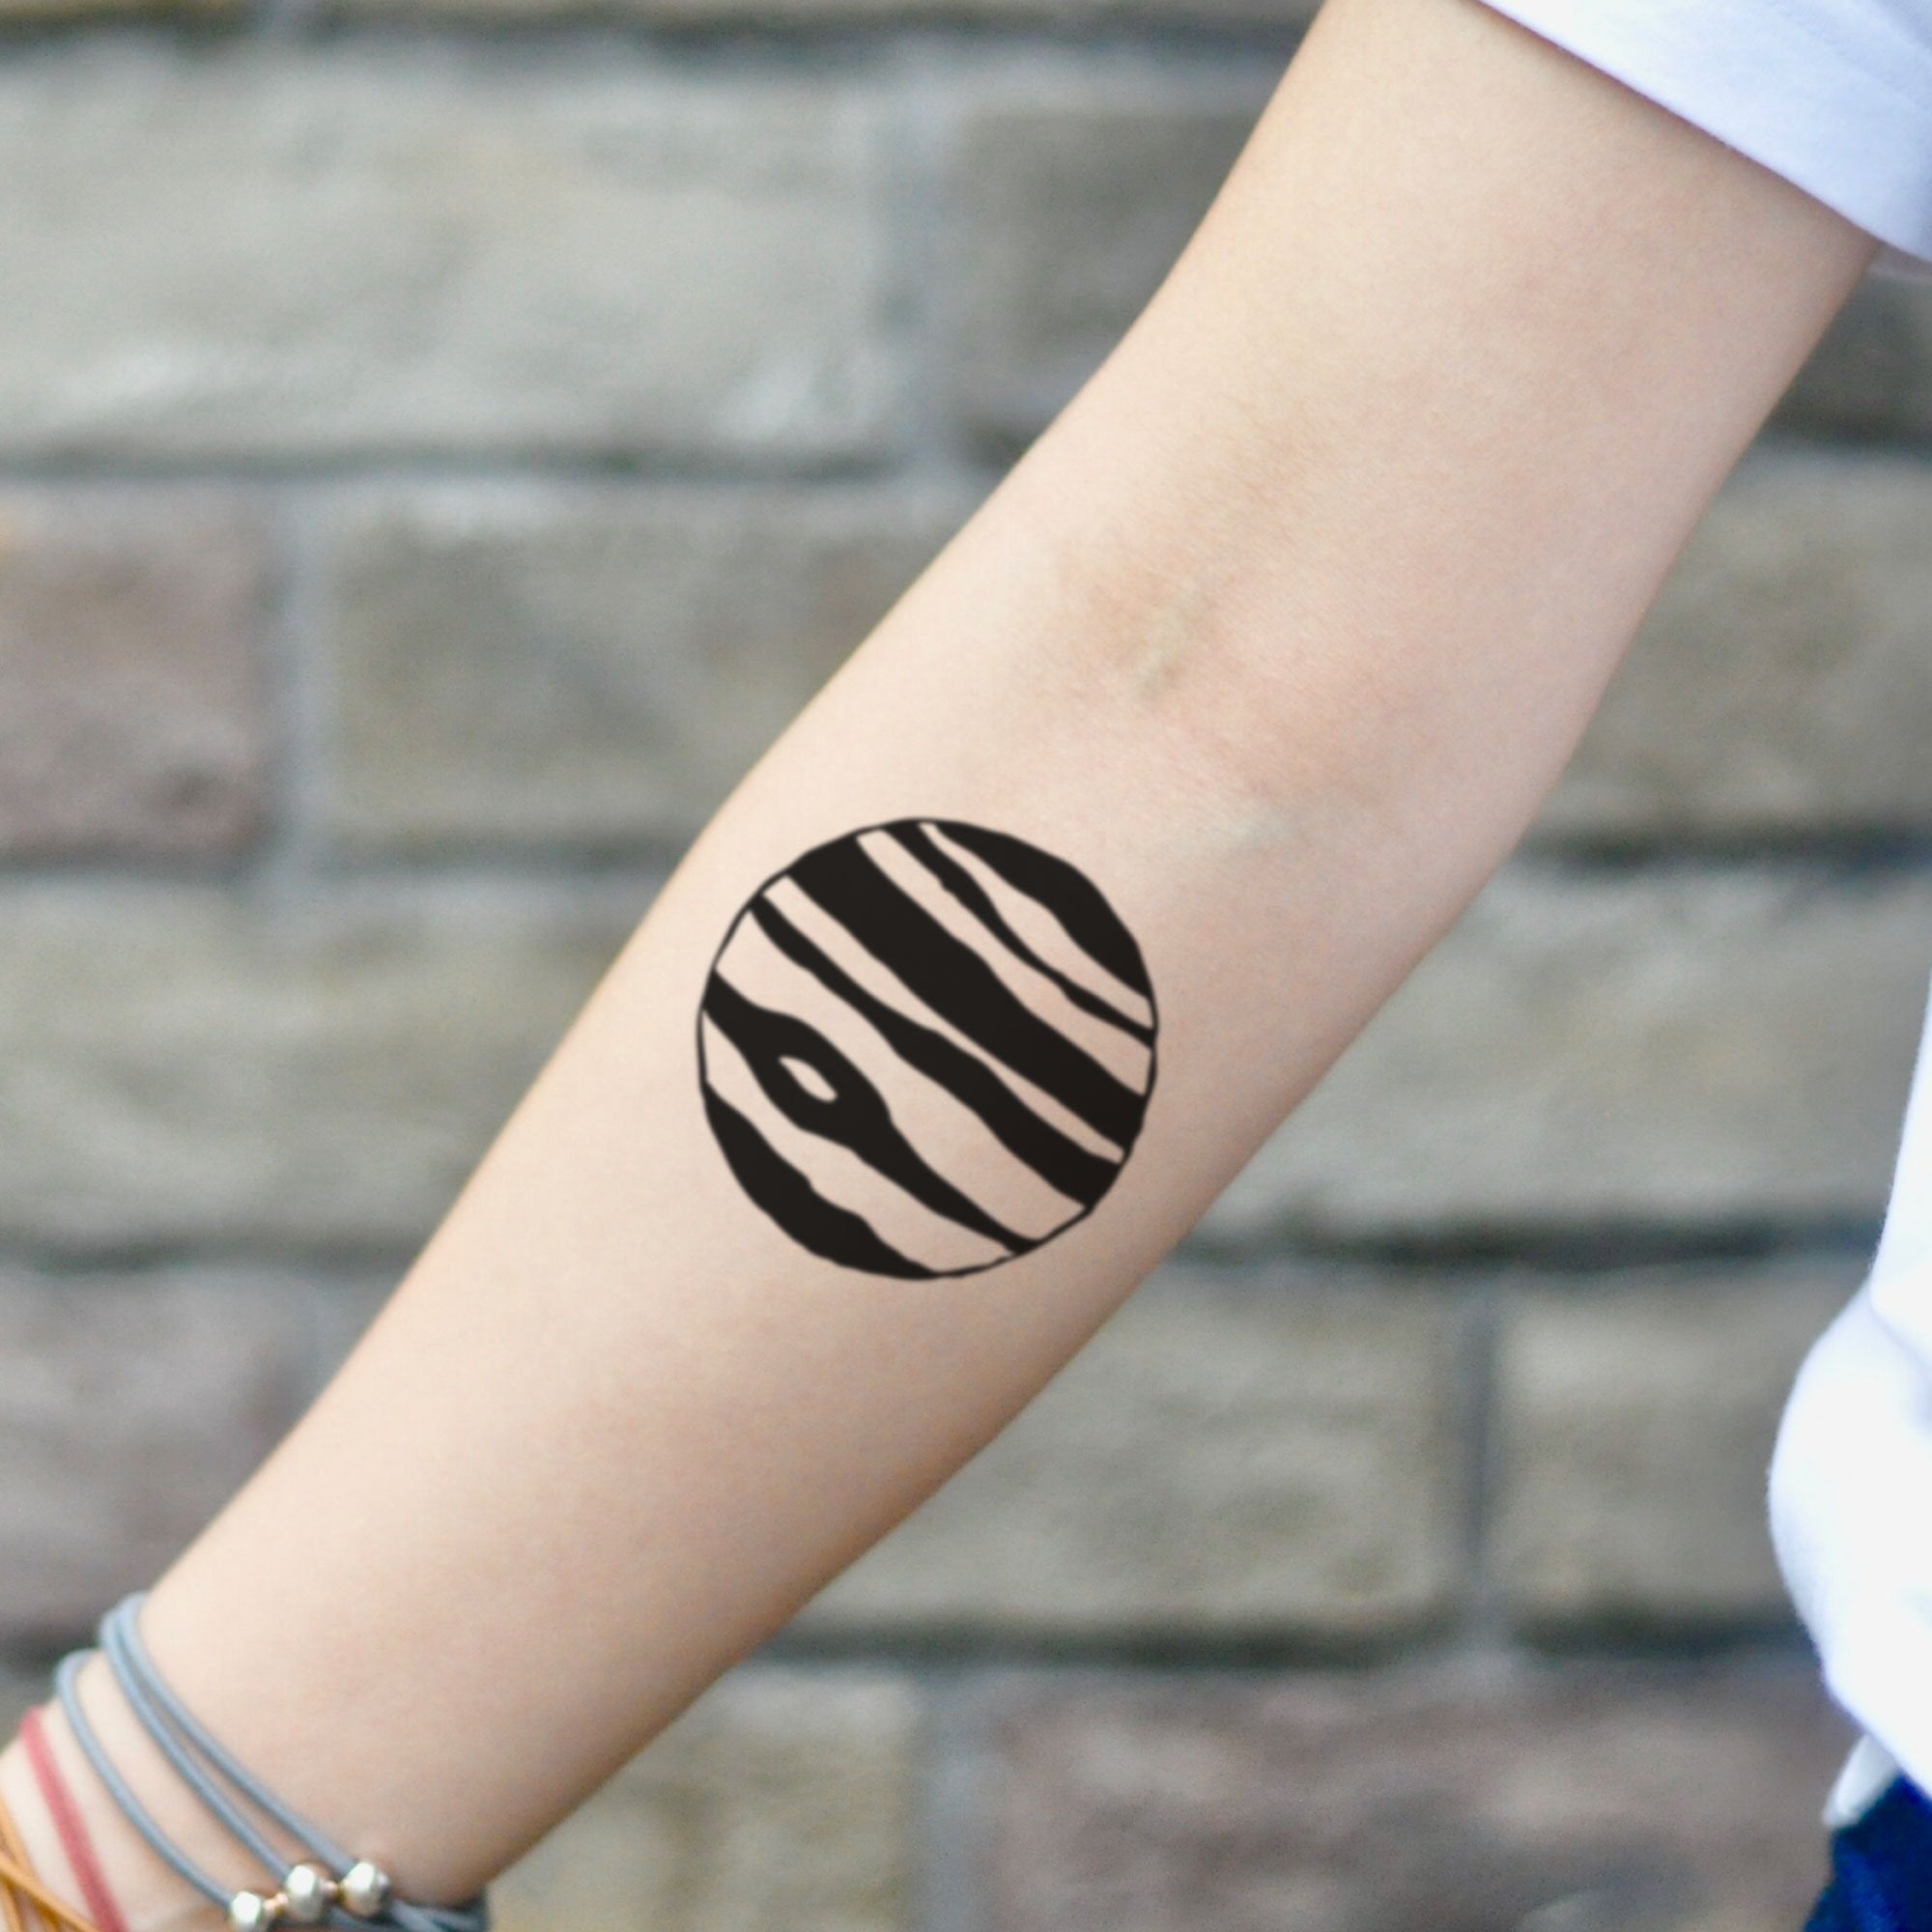 Jupiter Planet Temporary Tattoo Sticker - OhMyTat